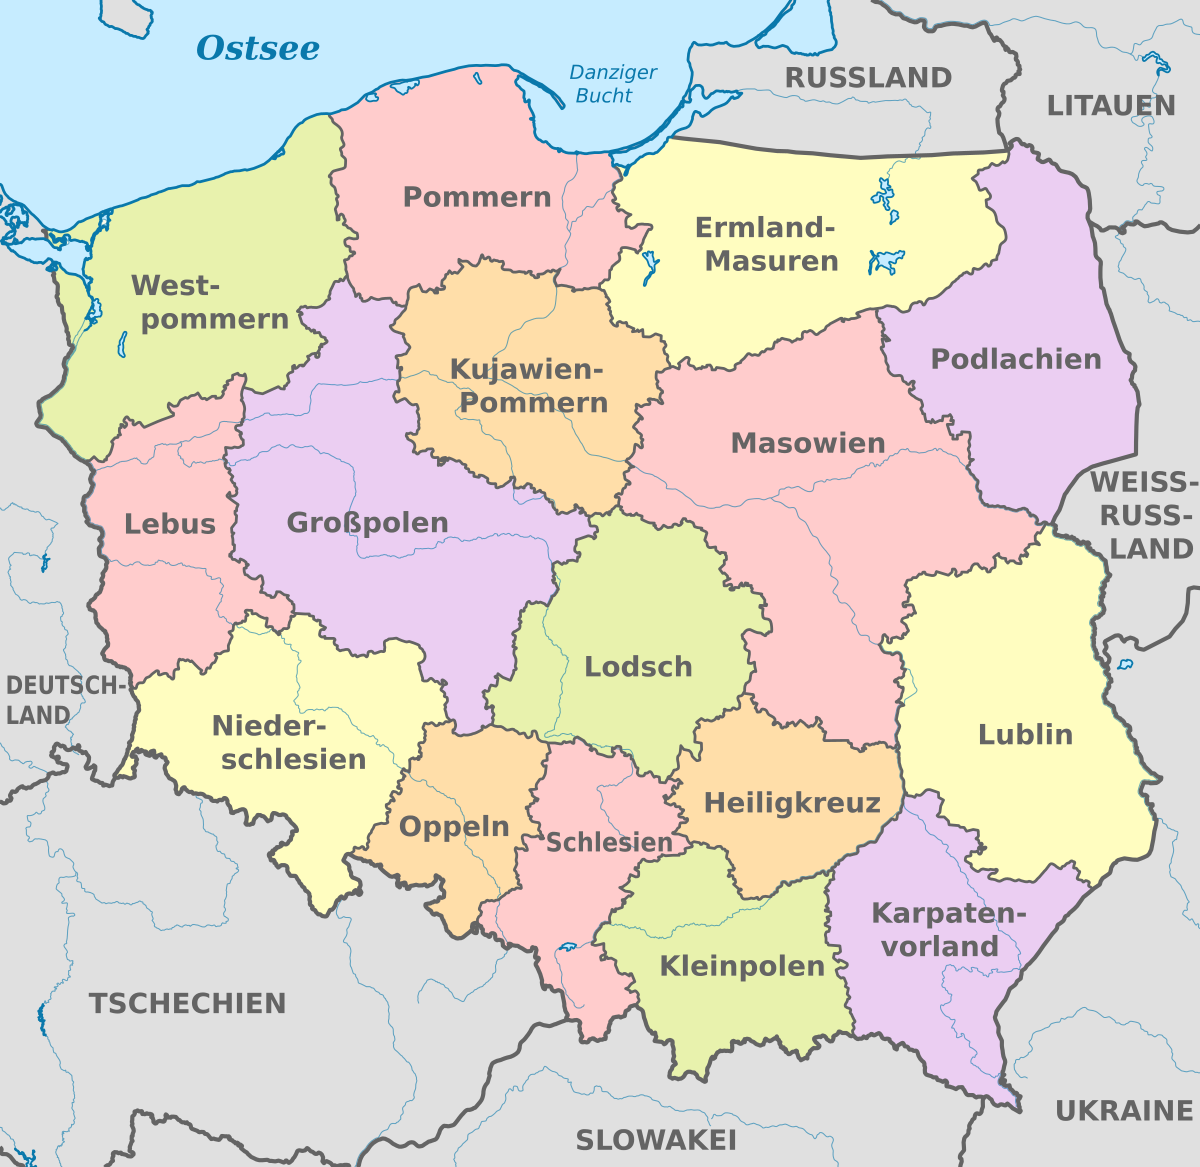 Карта германии и польши с городами на русском